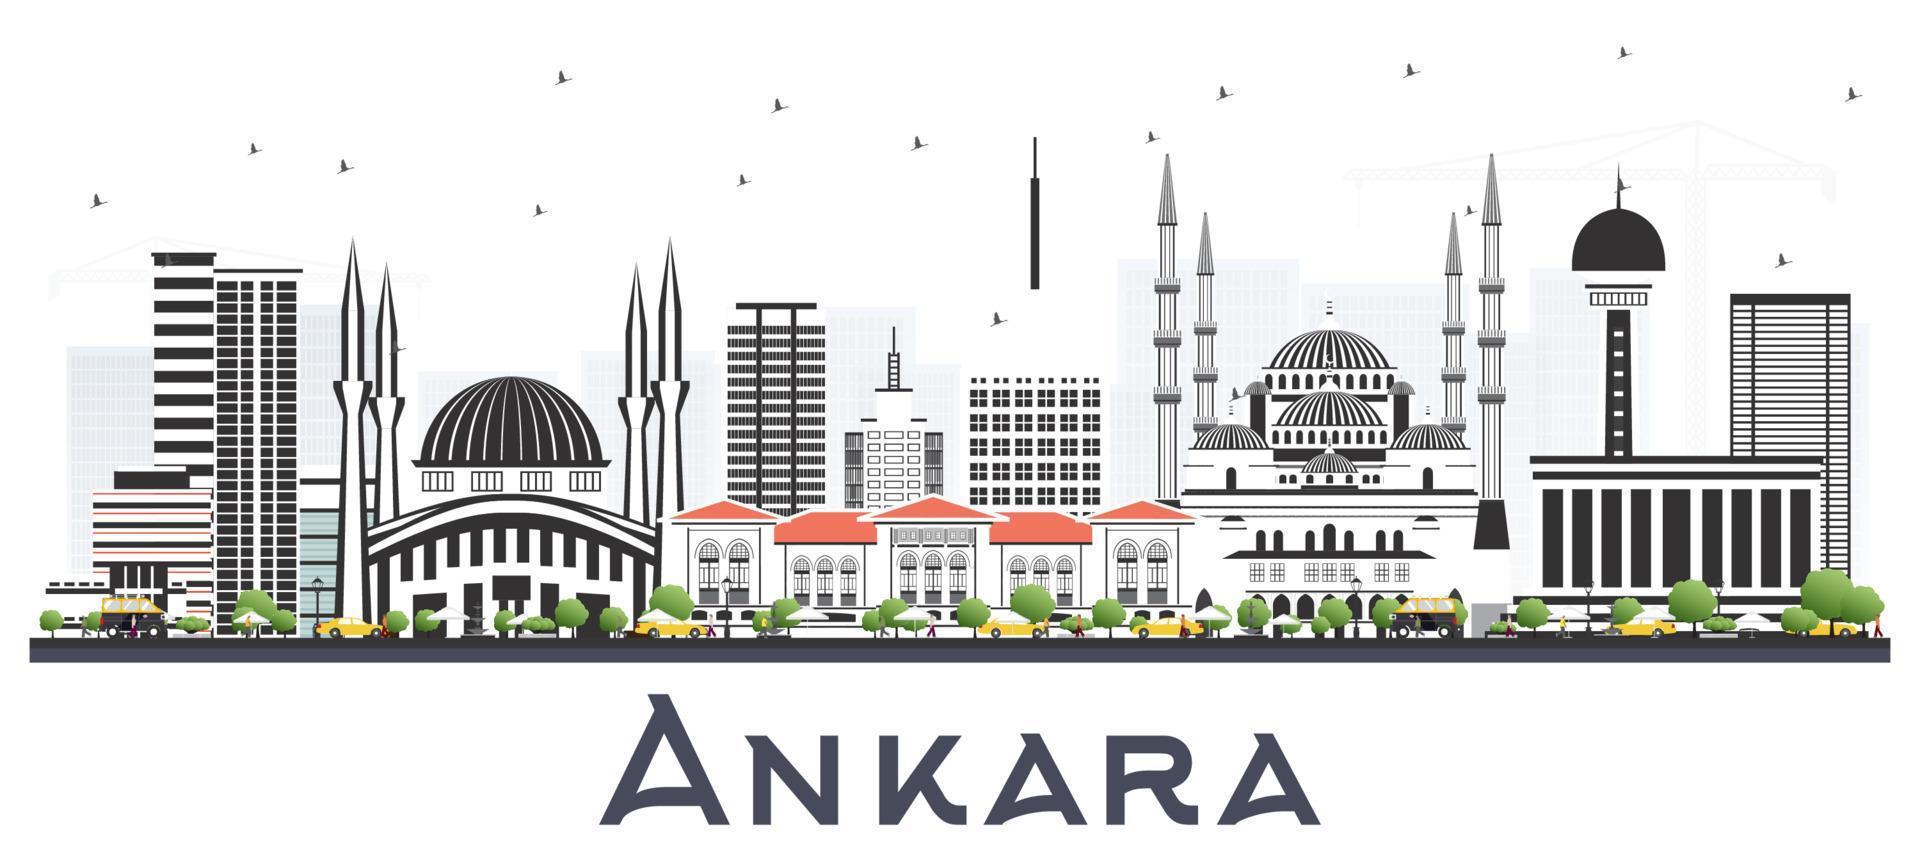 ankara türkei city skyline mit farbigen gebäuden isoliert auf weiß. vektor